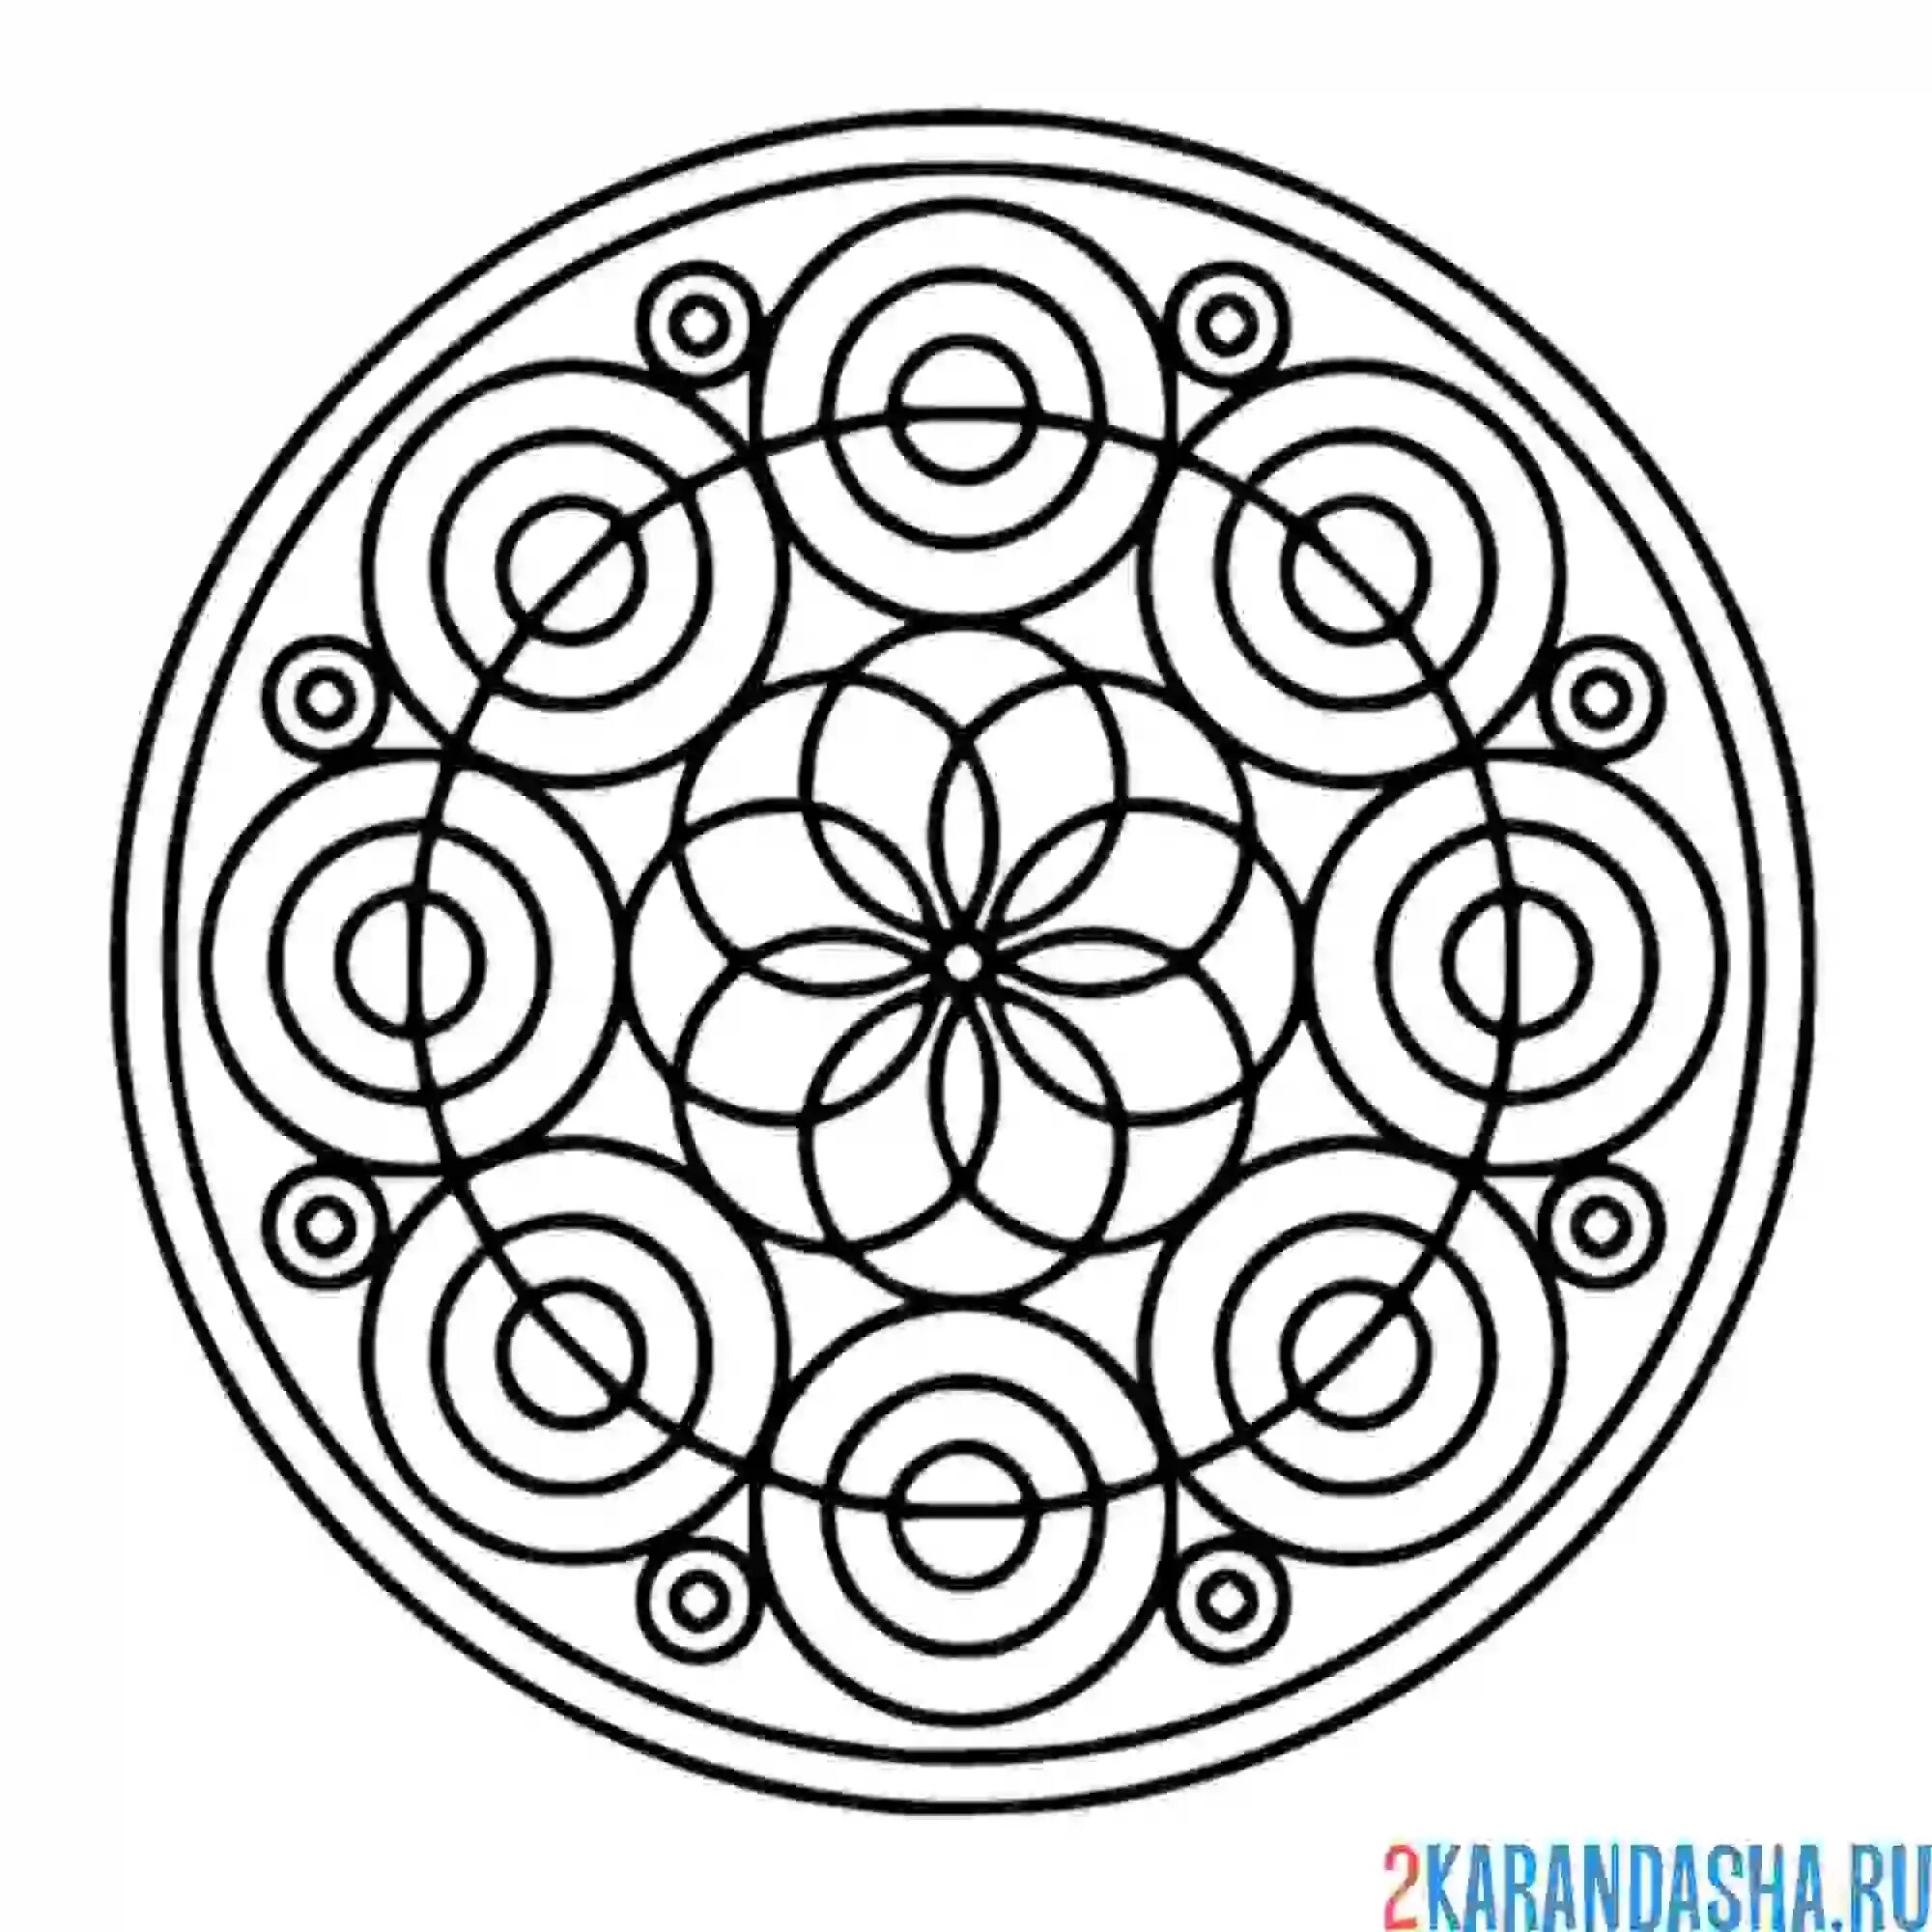 Раскрась цветными карандашами цветы из окружностей. Орнамент в круге. Геометрический узор в круге. Геометрический орнамент в круге. Симметричный узор в круге.